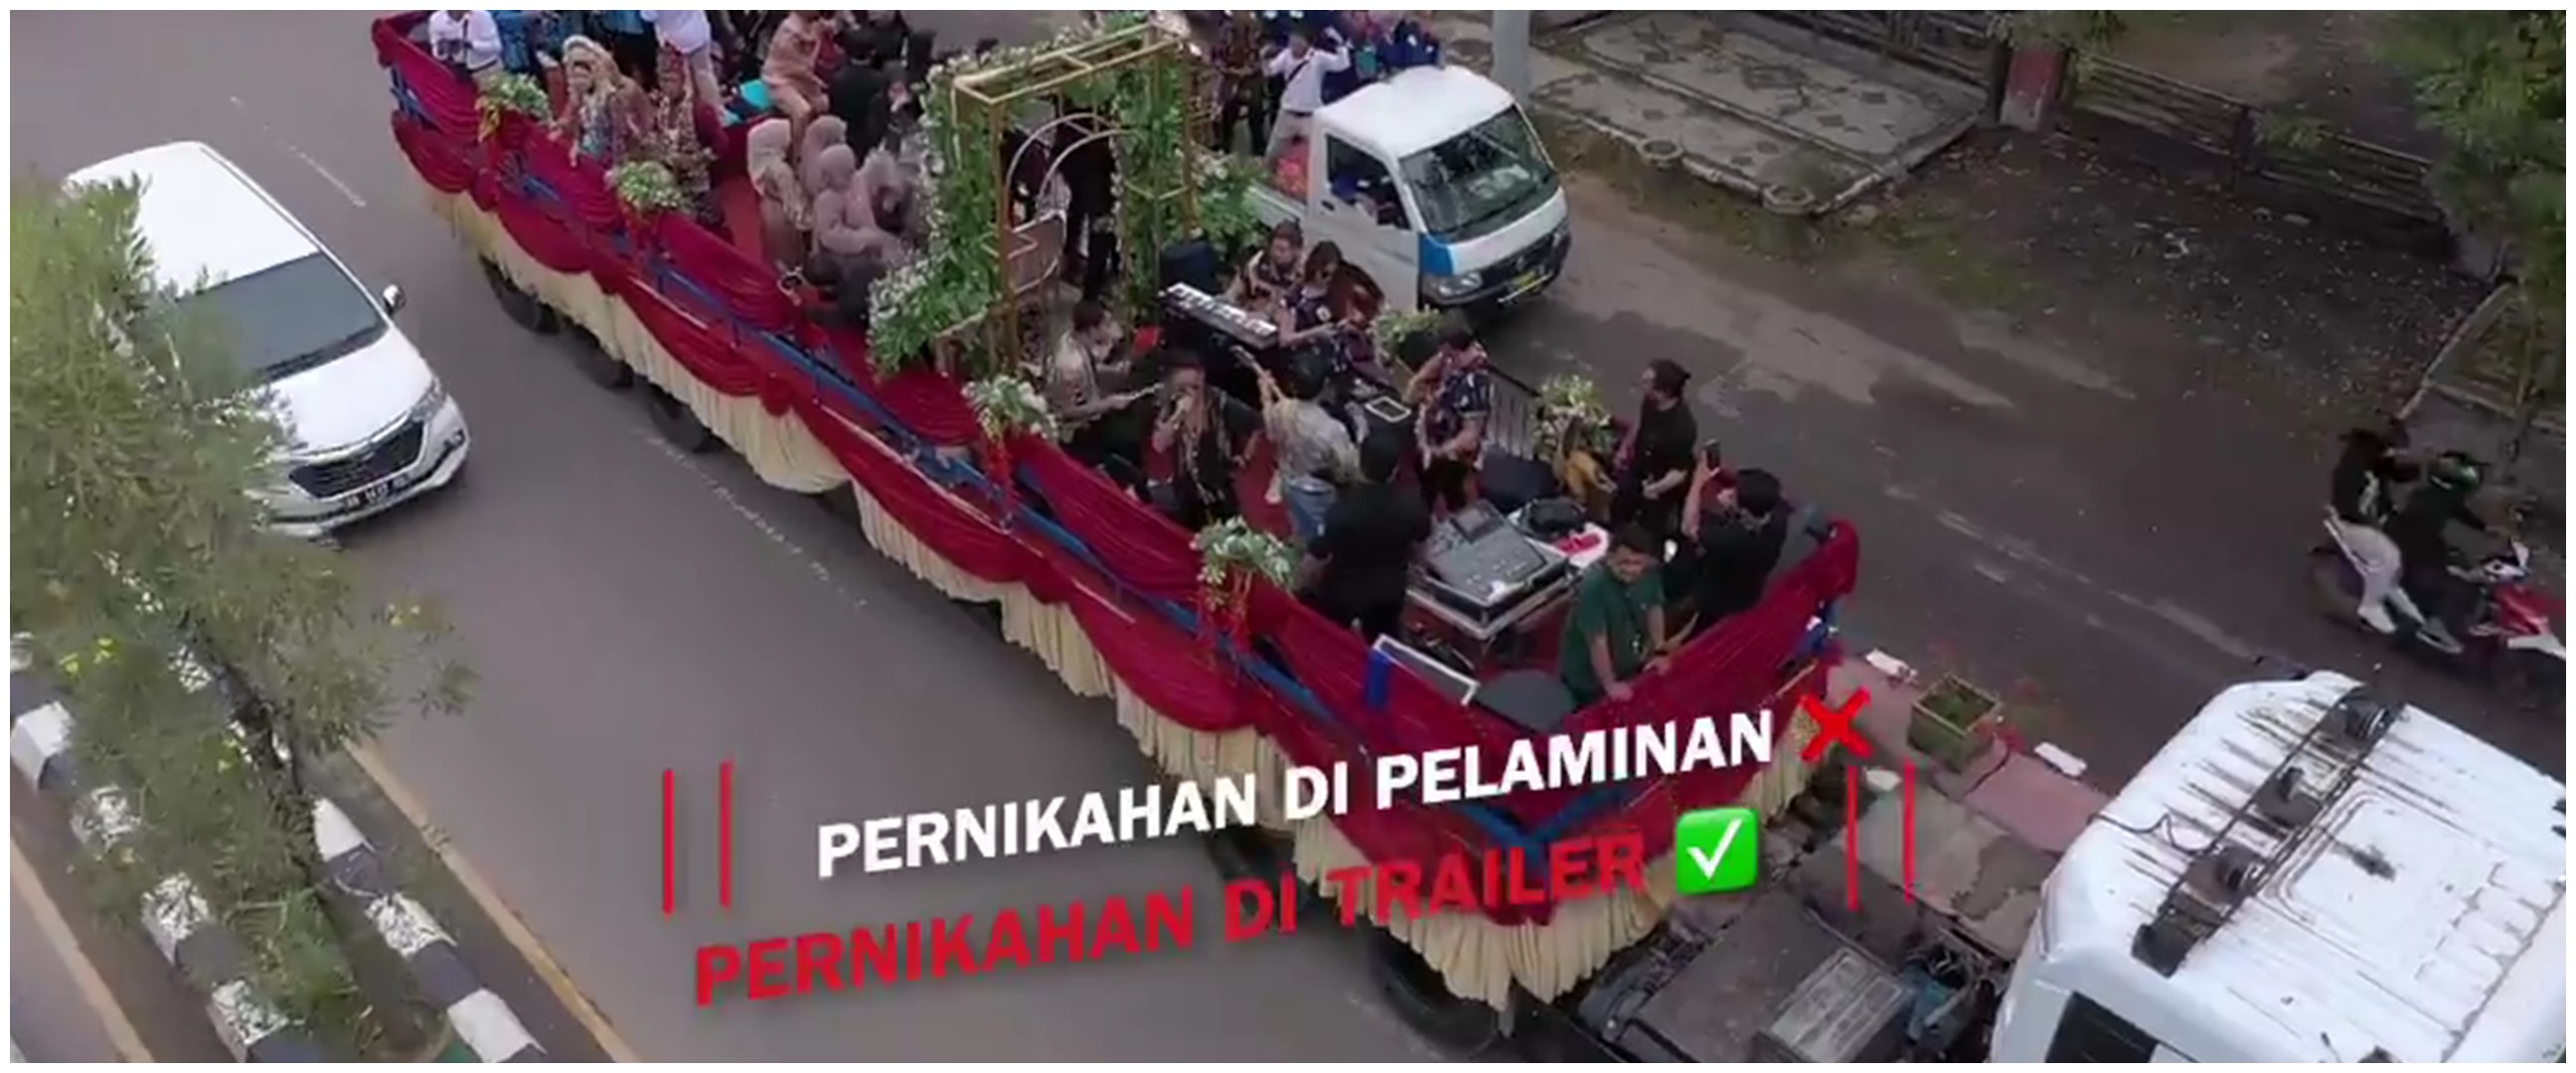 Di arak bak karnaval, momen pernikahan anak sultan di atas truk trailer ini antimainstream